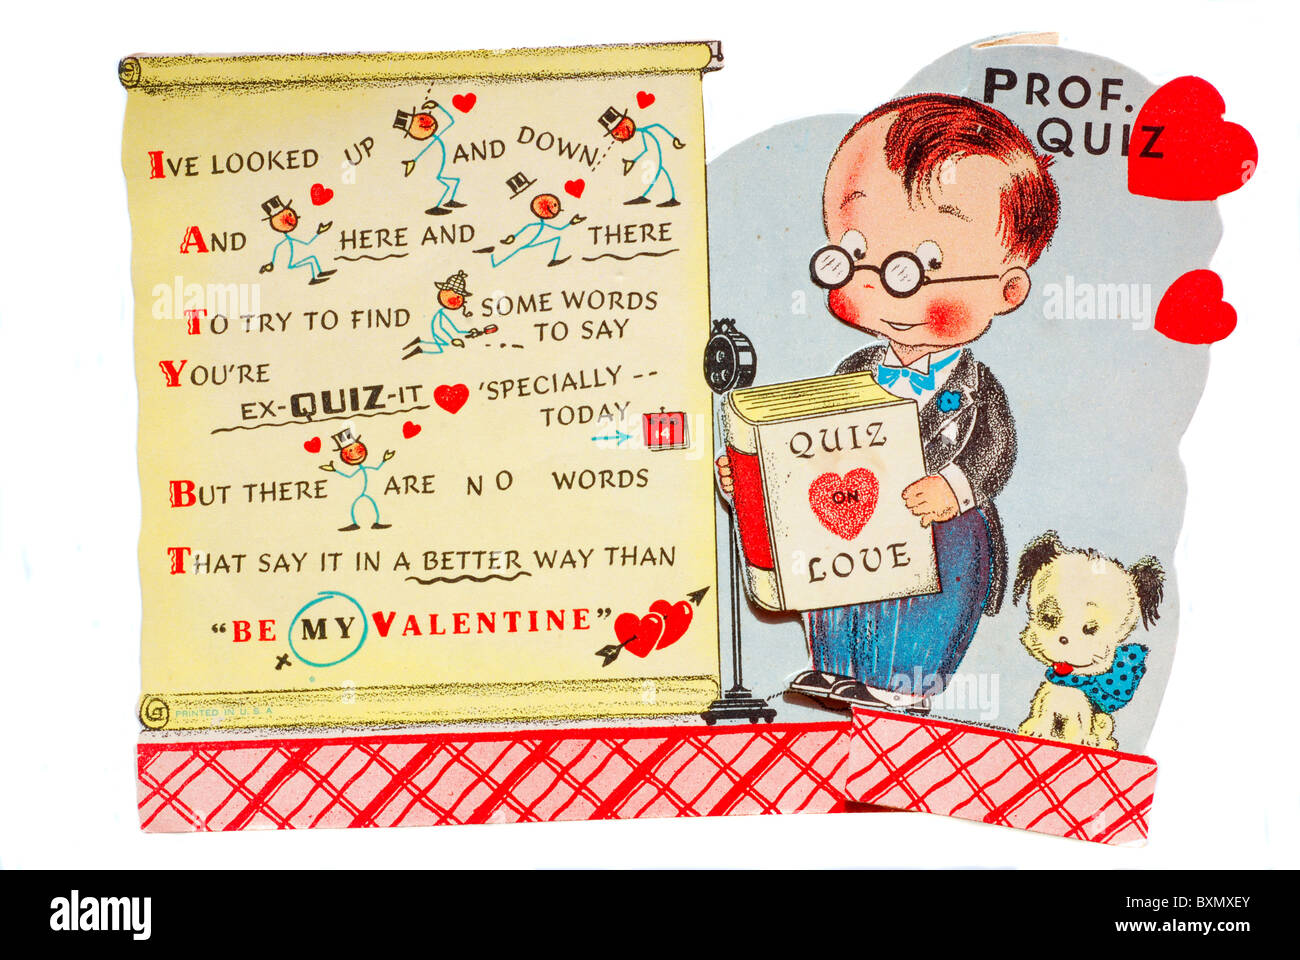 Vintage Karte zum Valentinstag mit Professor Quiz - Public domain überprüft Stockfoto